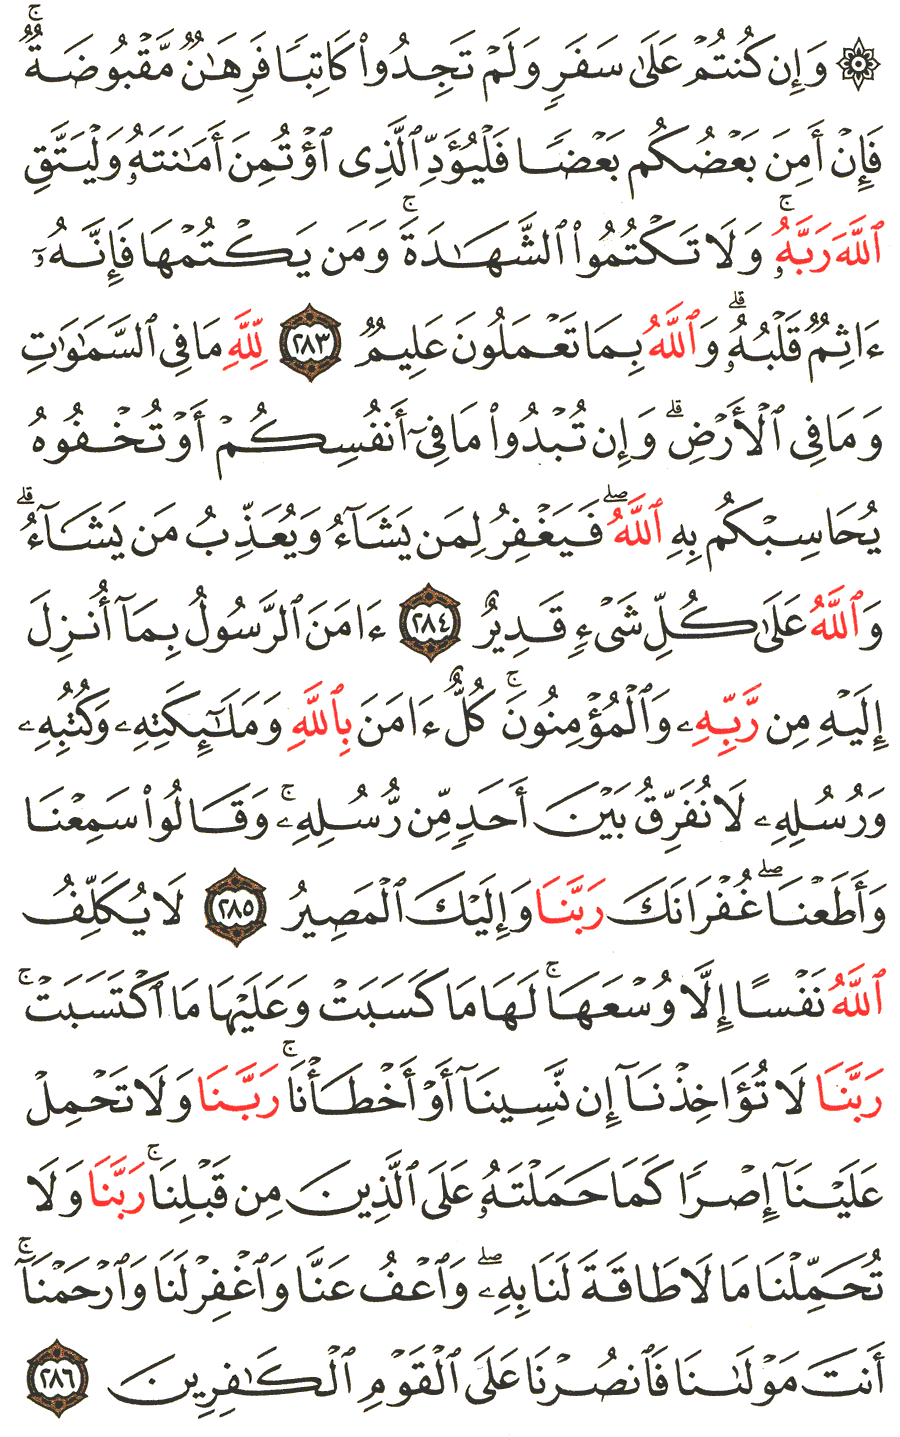 الصفحة رقم 49 من القرآن الكريم مكتوبة من المصحف